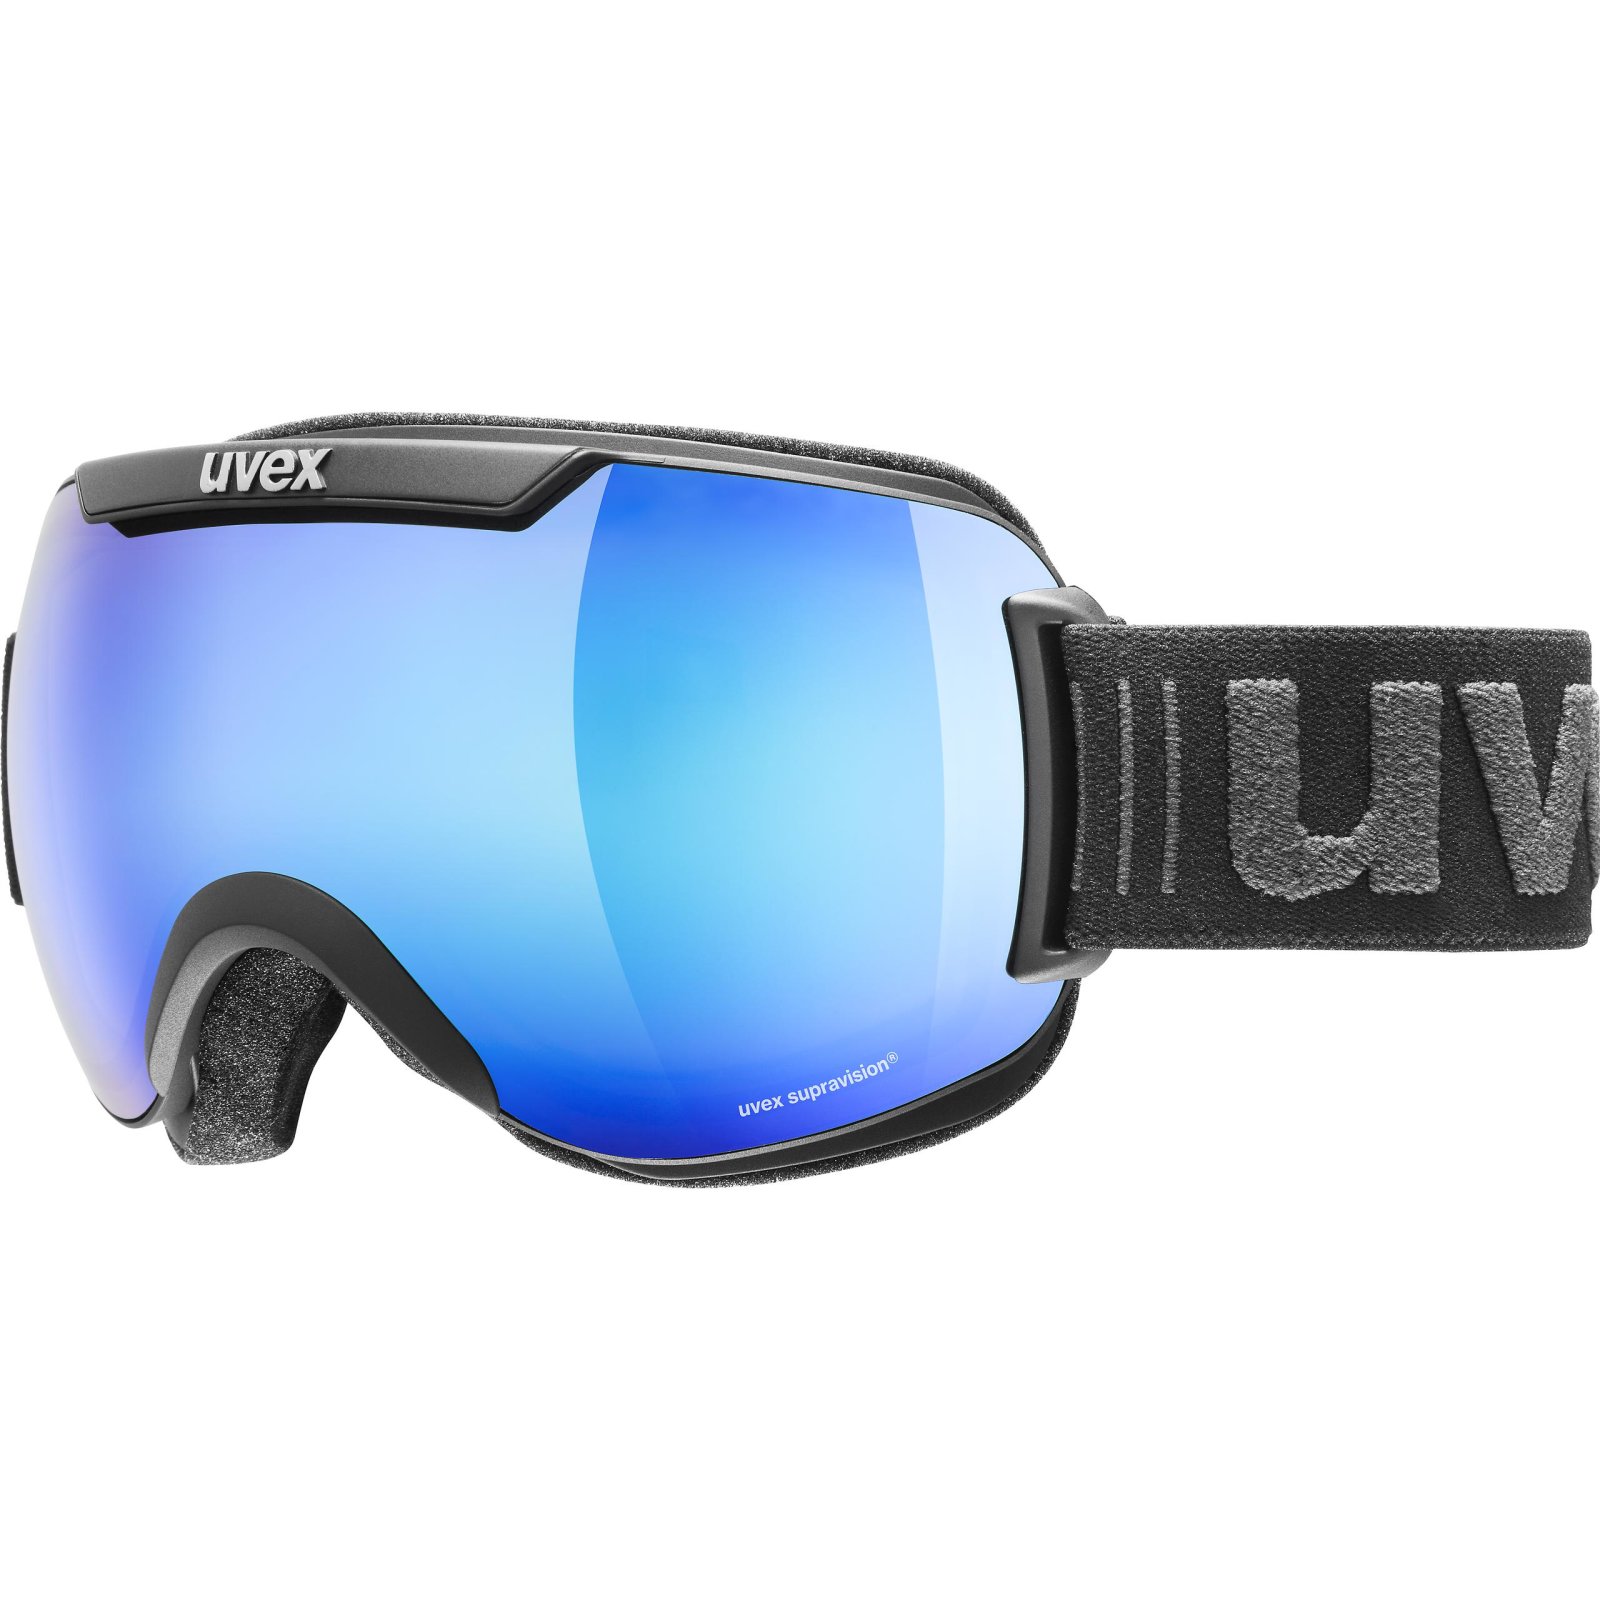 Ski goggles UVEX downhill 2000 FM 19/20